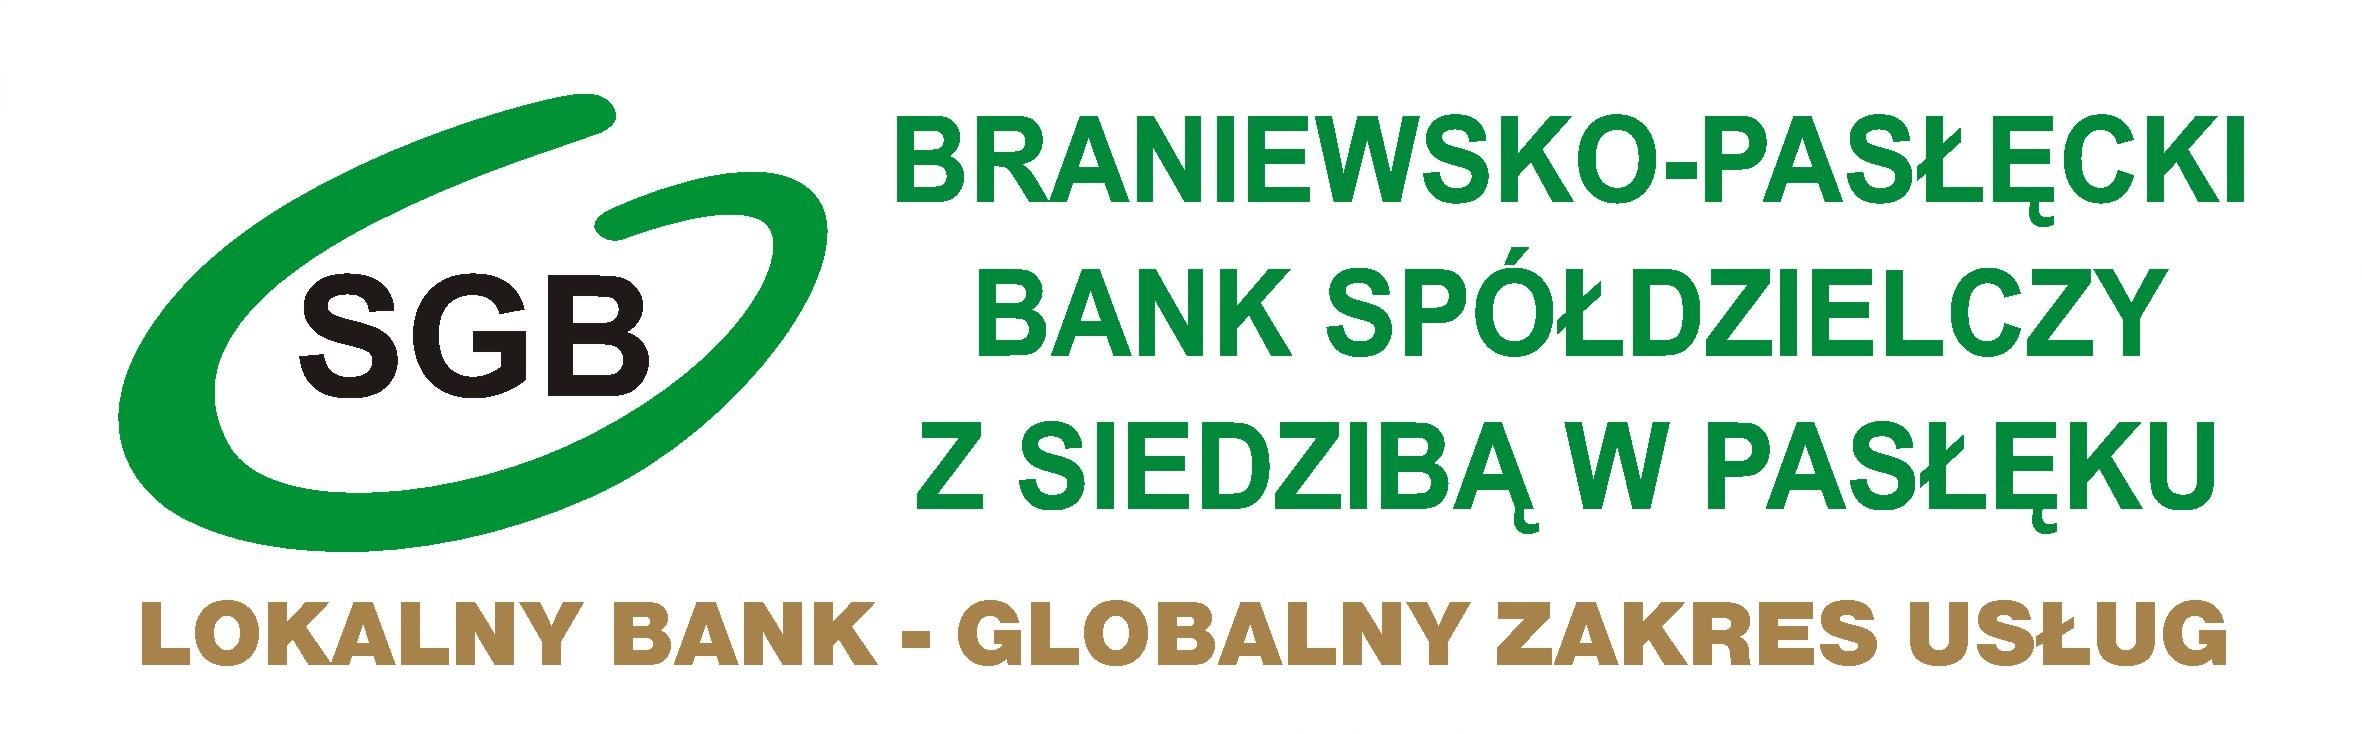 Kariera - Braniewsko-Pasłęcki Bank Spółdzielczy z siedzibą w Pasłęku